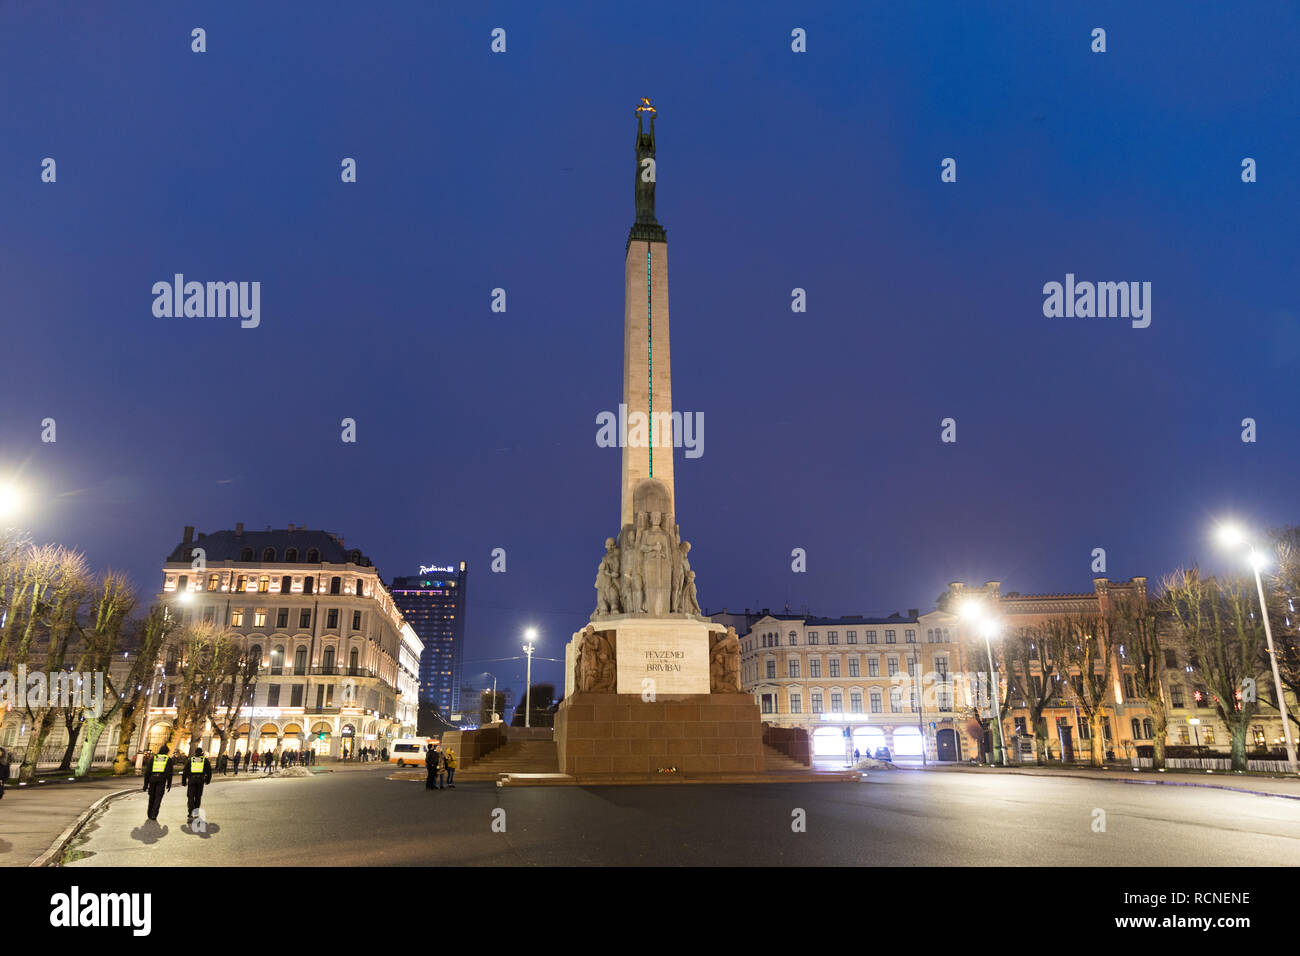 Freedom monument in Riga Latvia at night Stock Photo